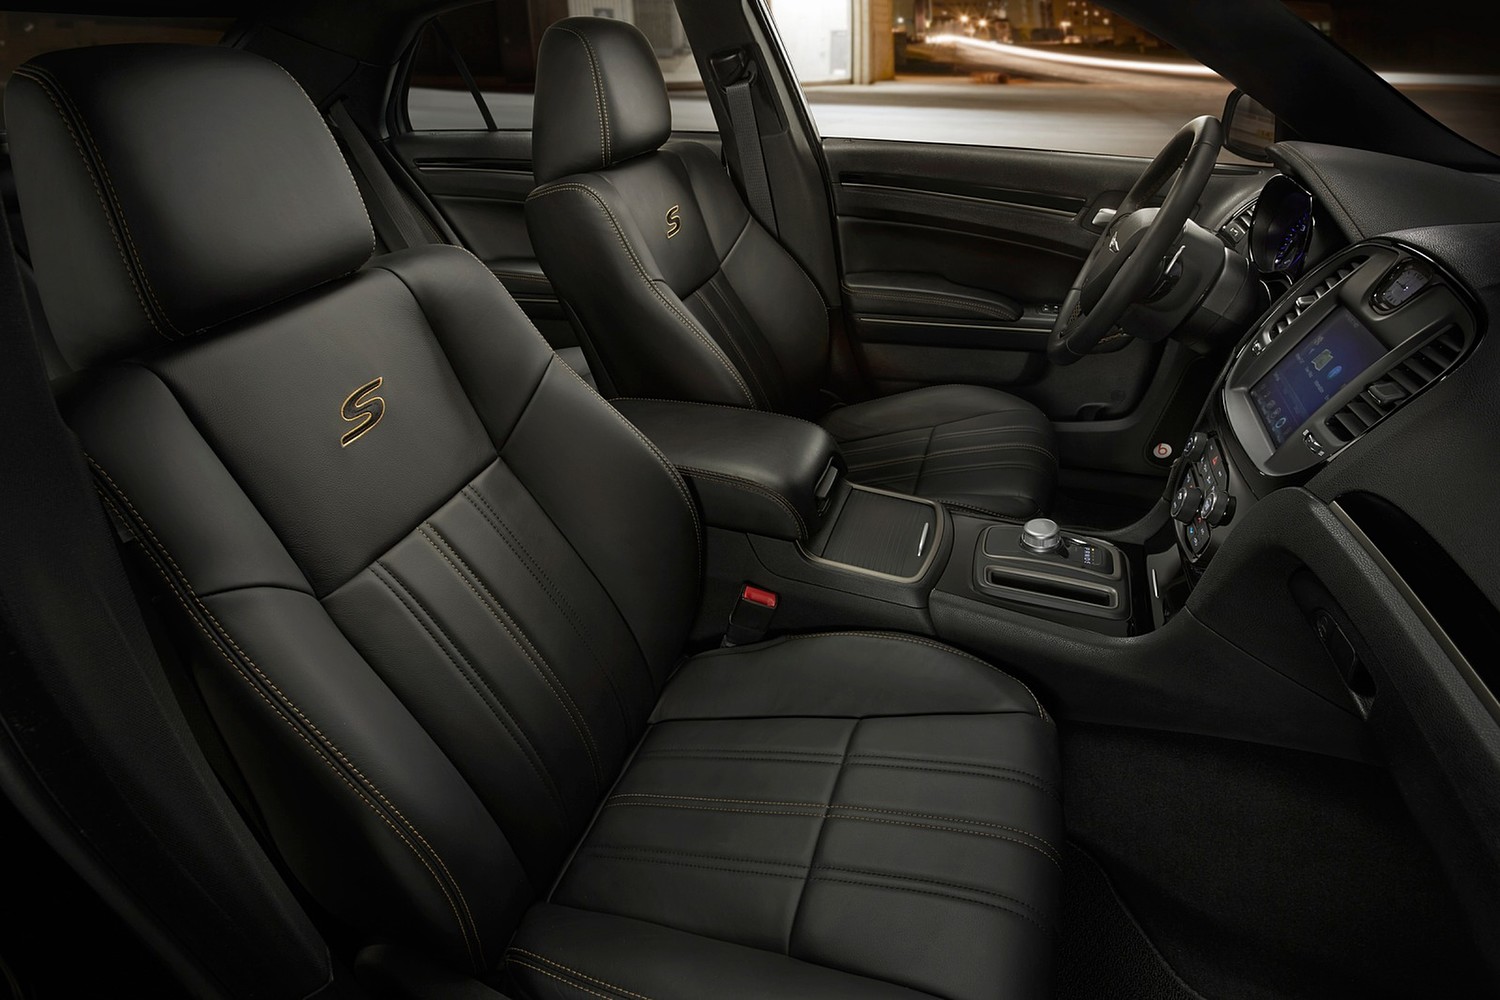 Chrysler 300 Alloy Sedan Interior. Options Shown. (2016 model year shown)